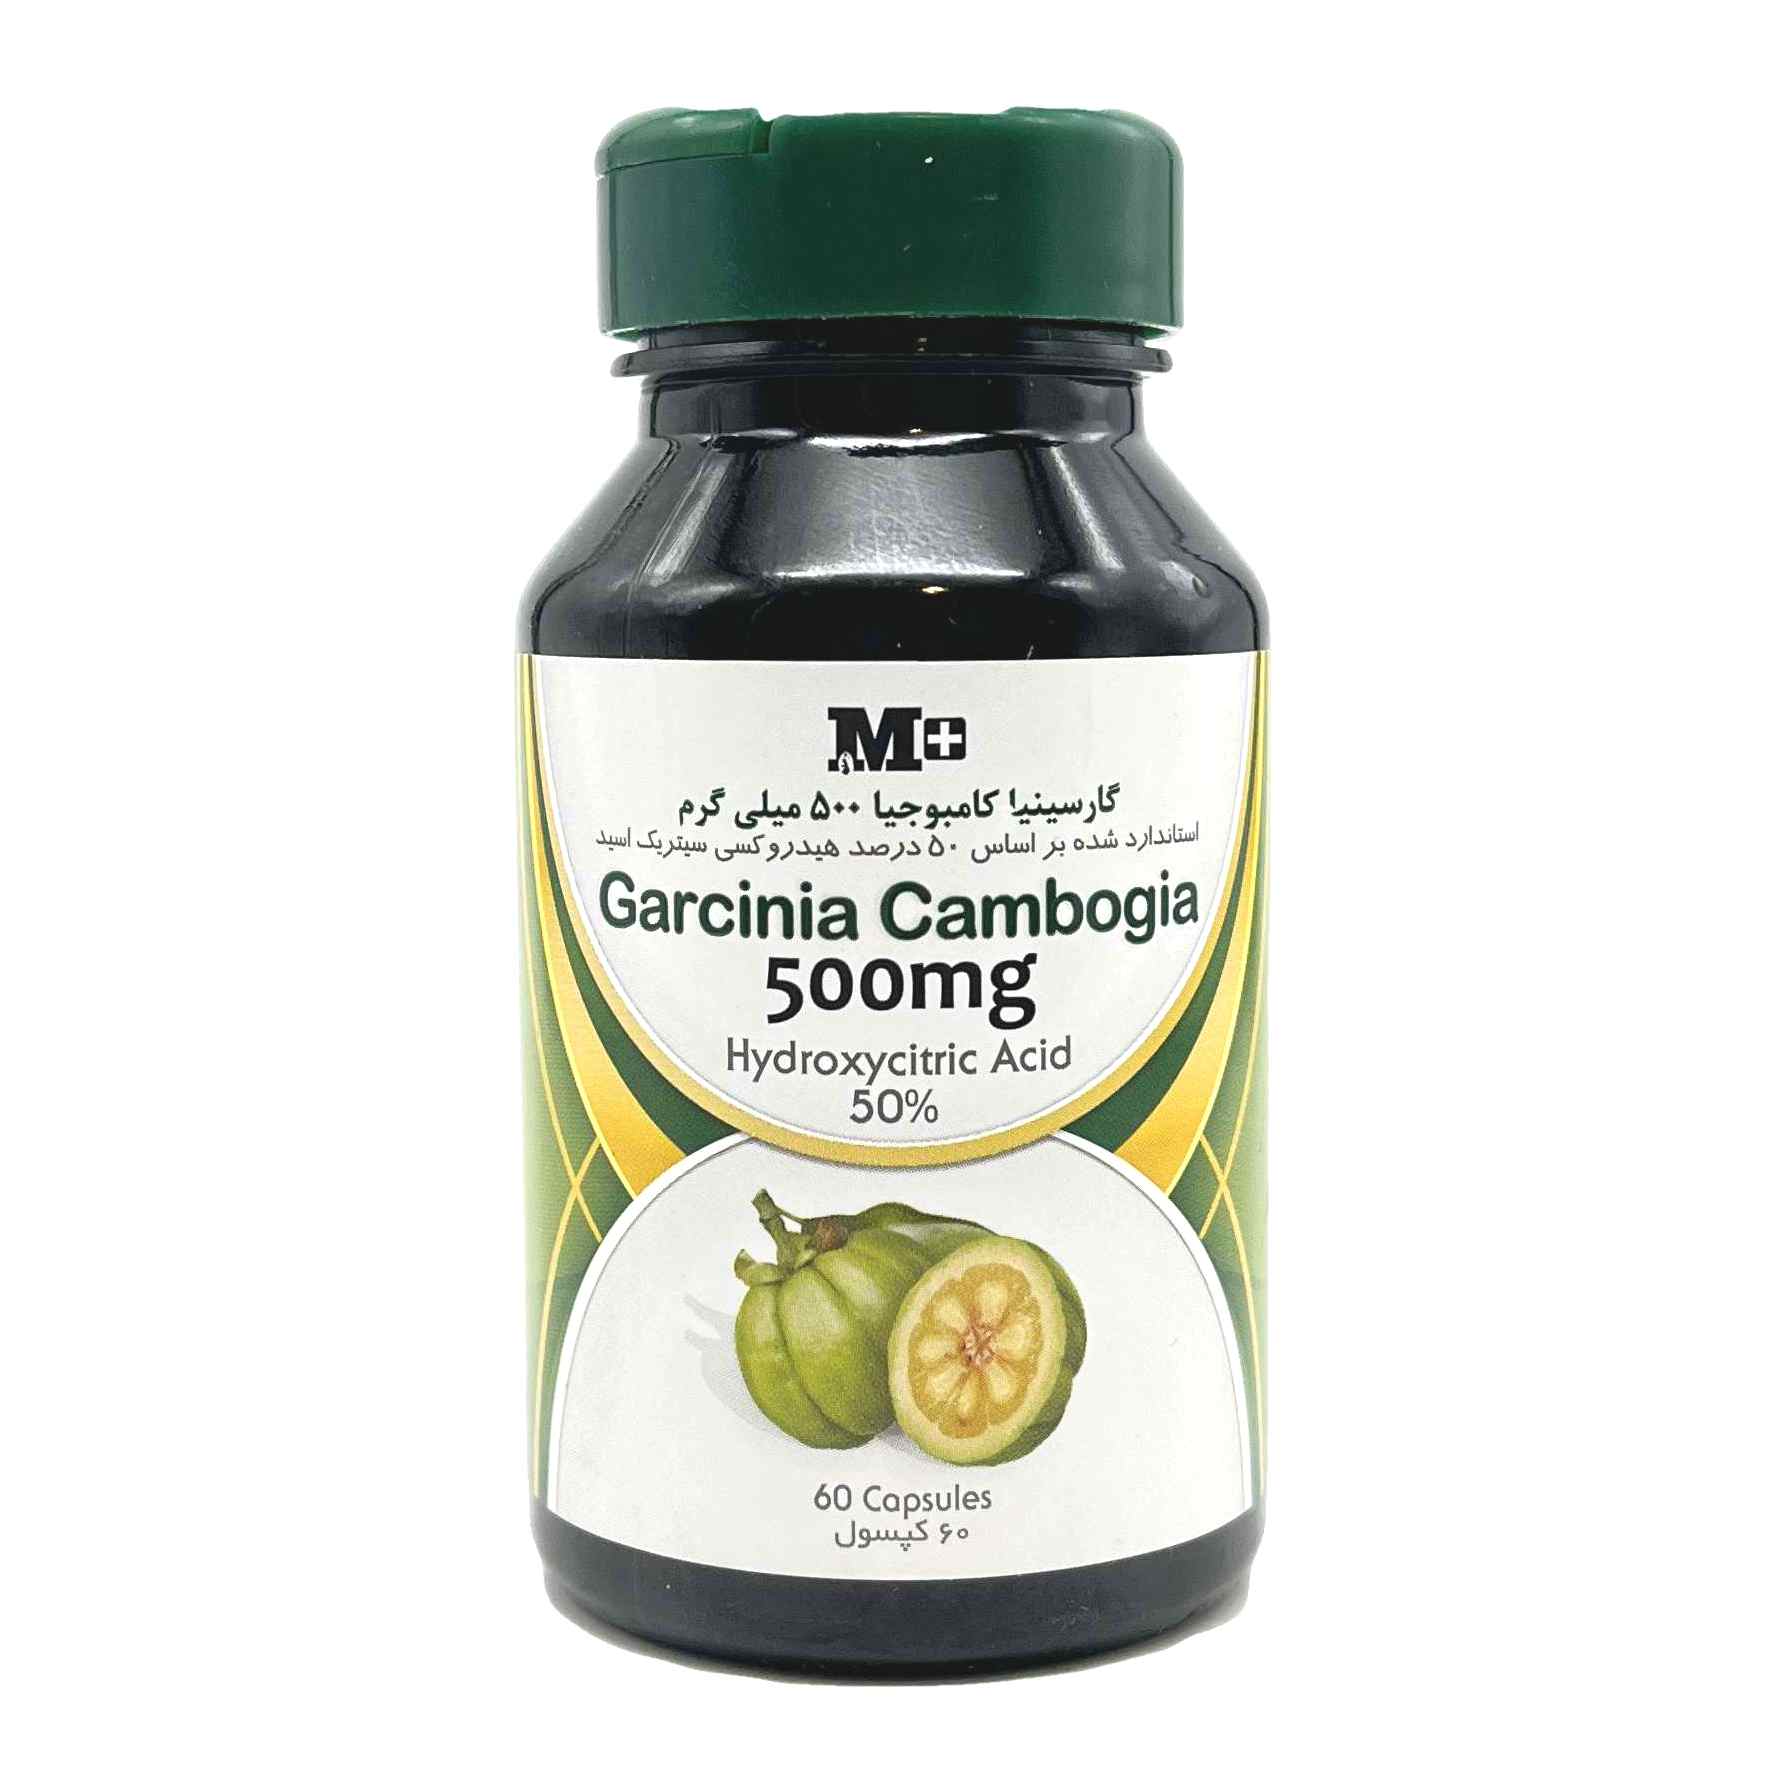 کپسول گارسینیا کامبوجیا ۵۰۰ میلی گرم ام پلاس M plus Garcinia Cambogia